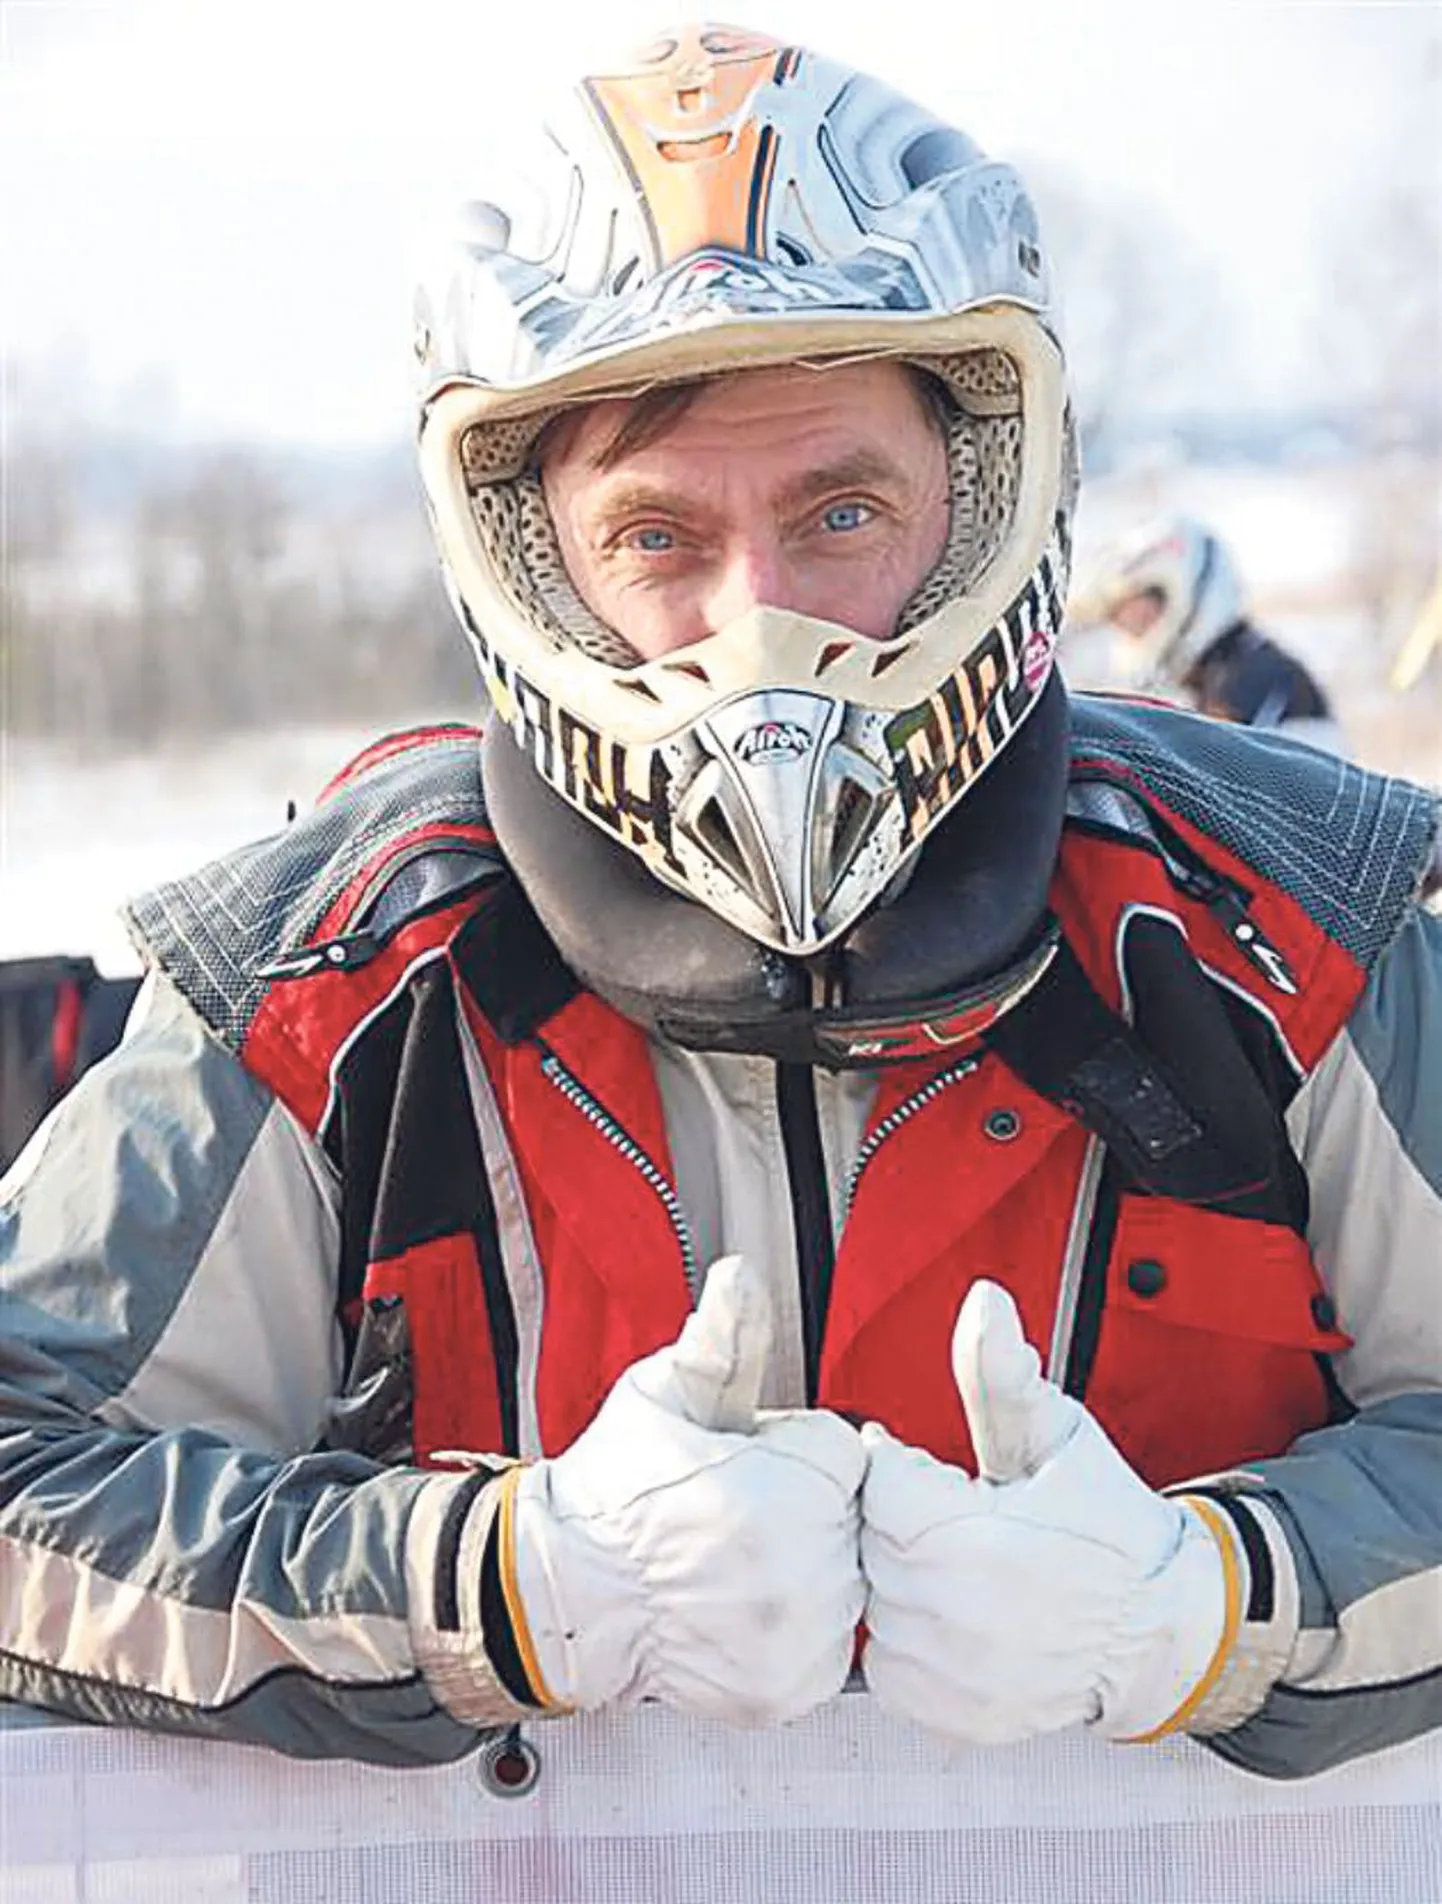 Pärnu motoklubi krossiäss Jüri Makarov võitis seenioride konkurentsis esikoha.